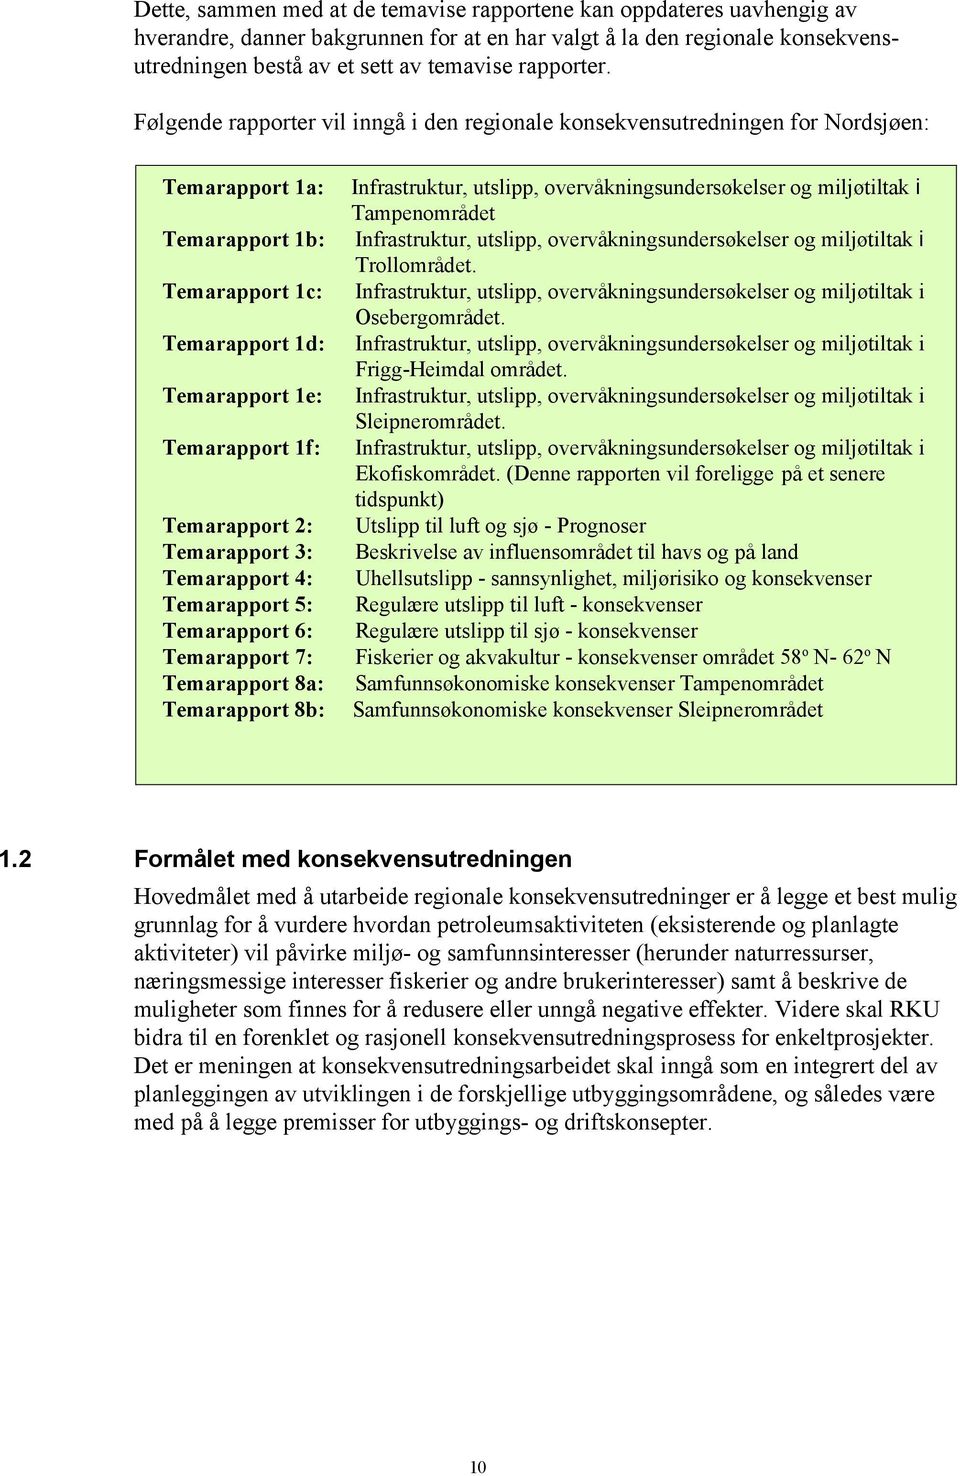 Følgende rapporter vil inngå i den regionale konsekvensutredningen for Nordsjøen: Temarapport 1a: Temarapport 1b: Temarapport 1c: Temarapport 1d: Temarapport 1e: Temarapport 1f: Temarapport 2: